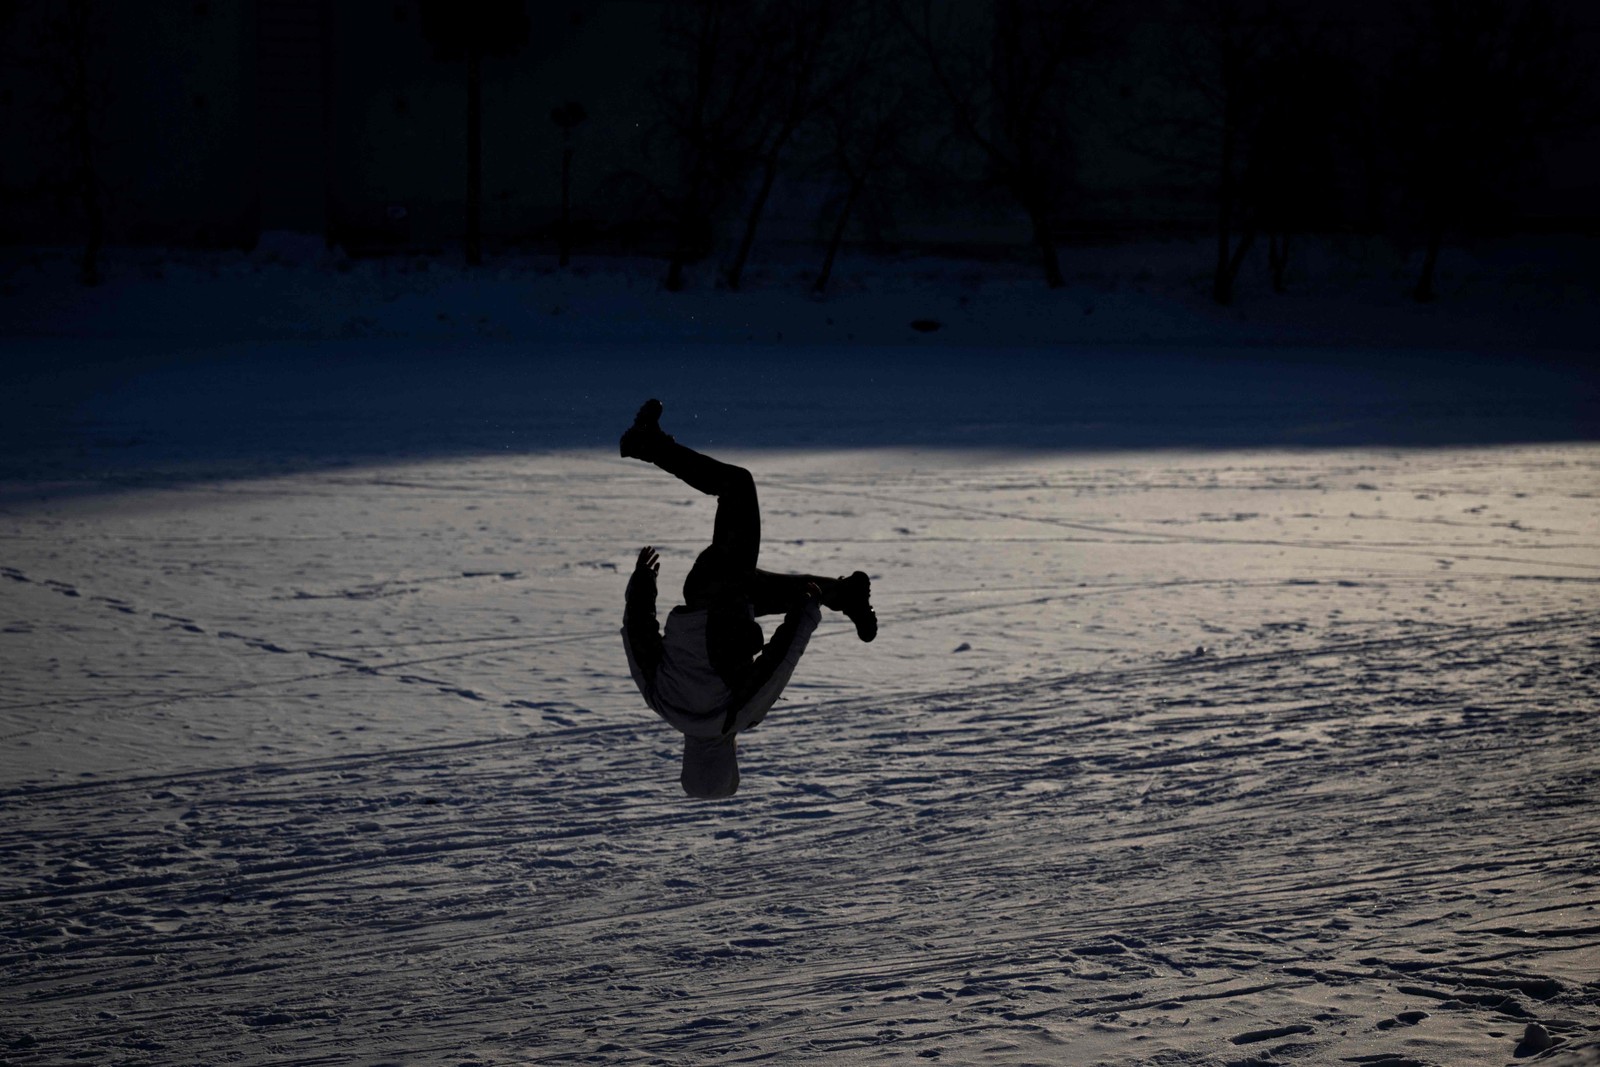 Menino realiza um salto mortal em um lago congelado em Moscou — Foto: Natalia KOLESNIKOVA / AFP